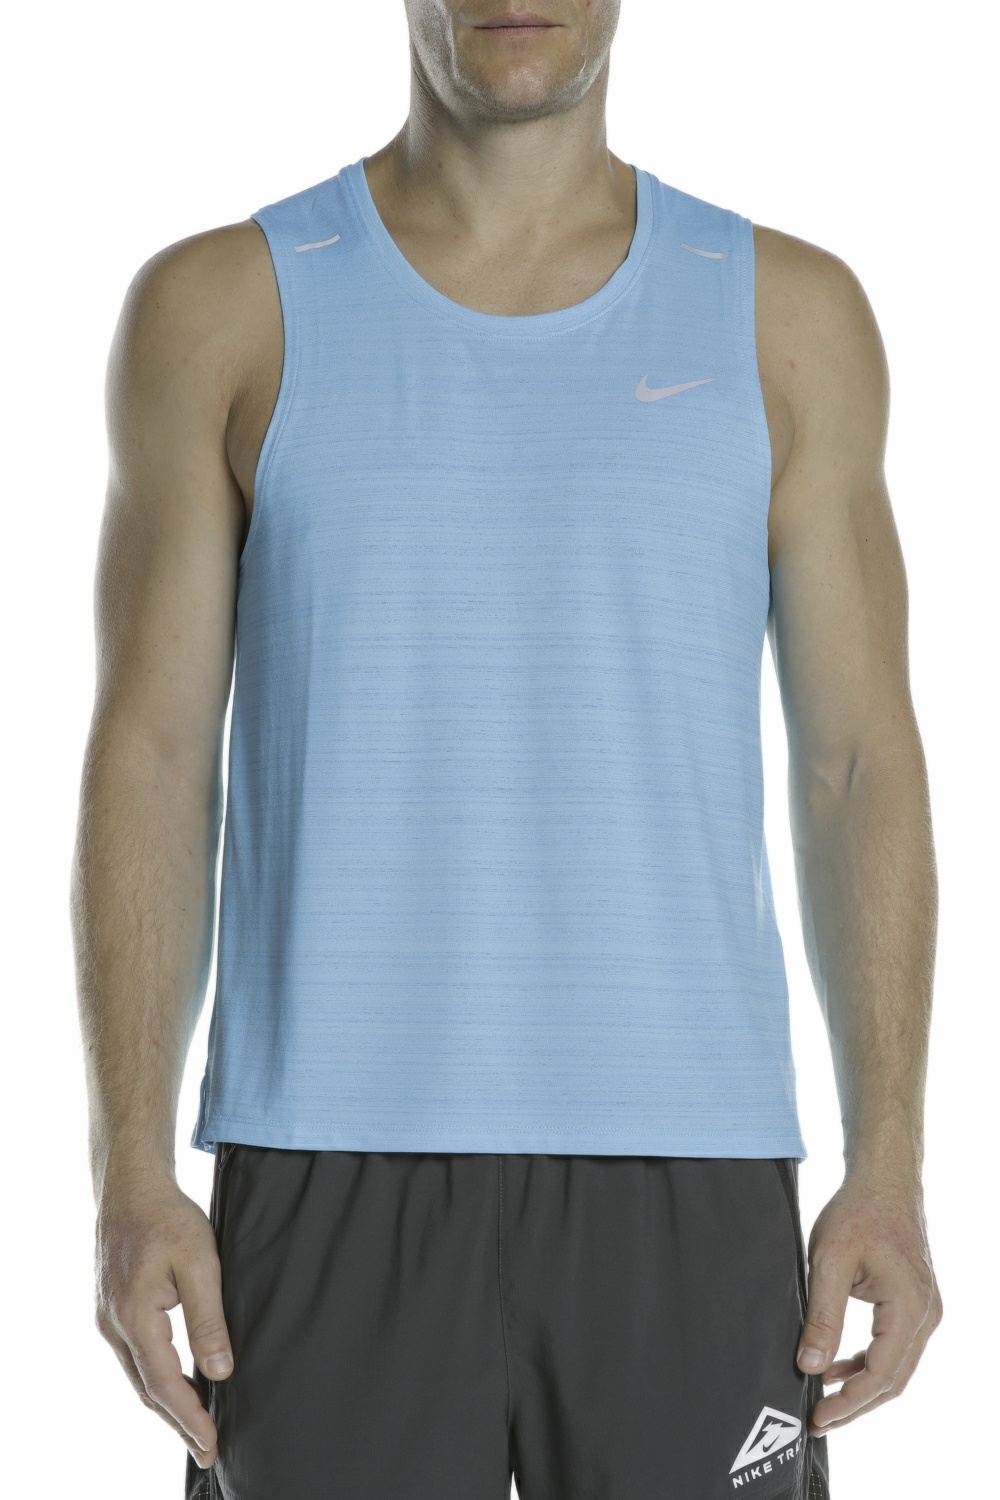 Ανδρικά/Ρούχα/Αθλητικά/T-shirt NIKE - Ανδρική μπλούζα NIKE DF MILER TANK γαλάζια